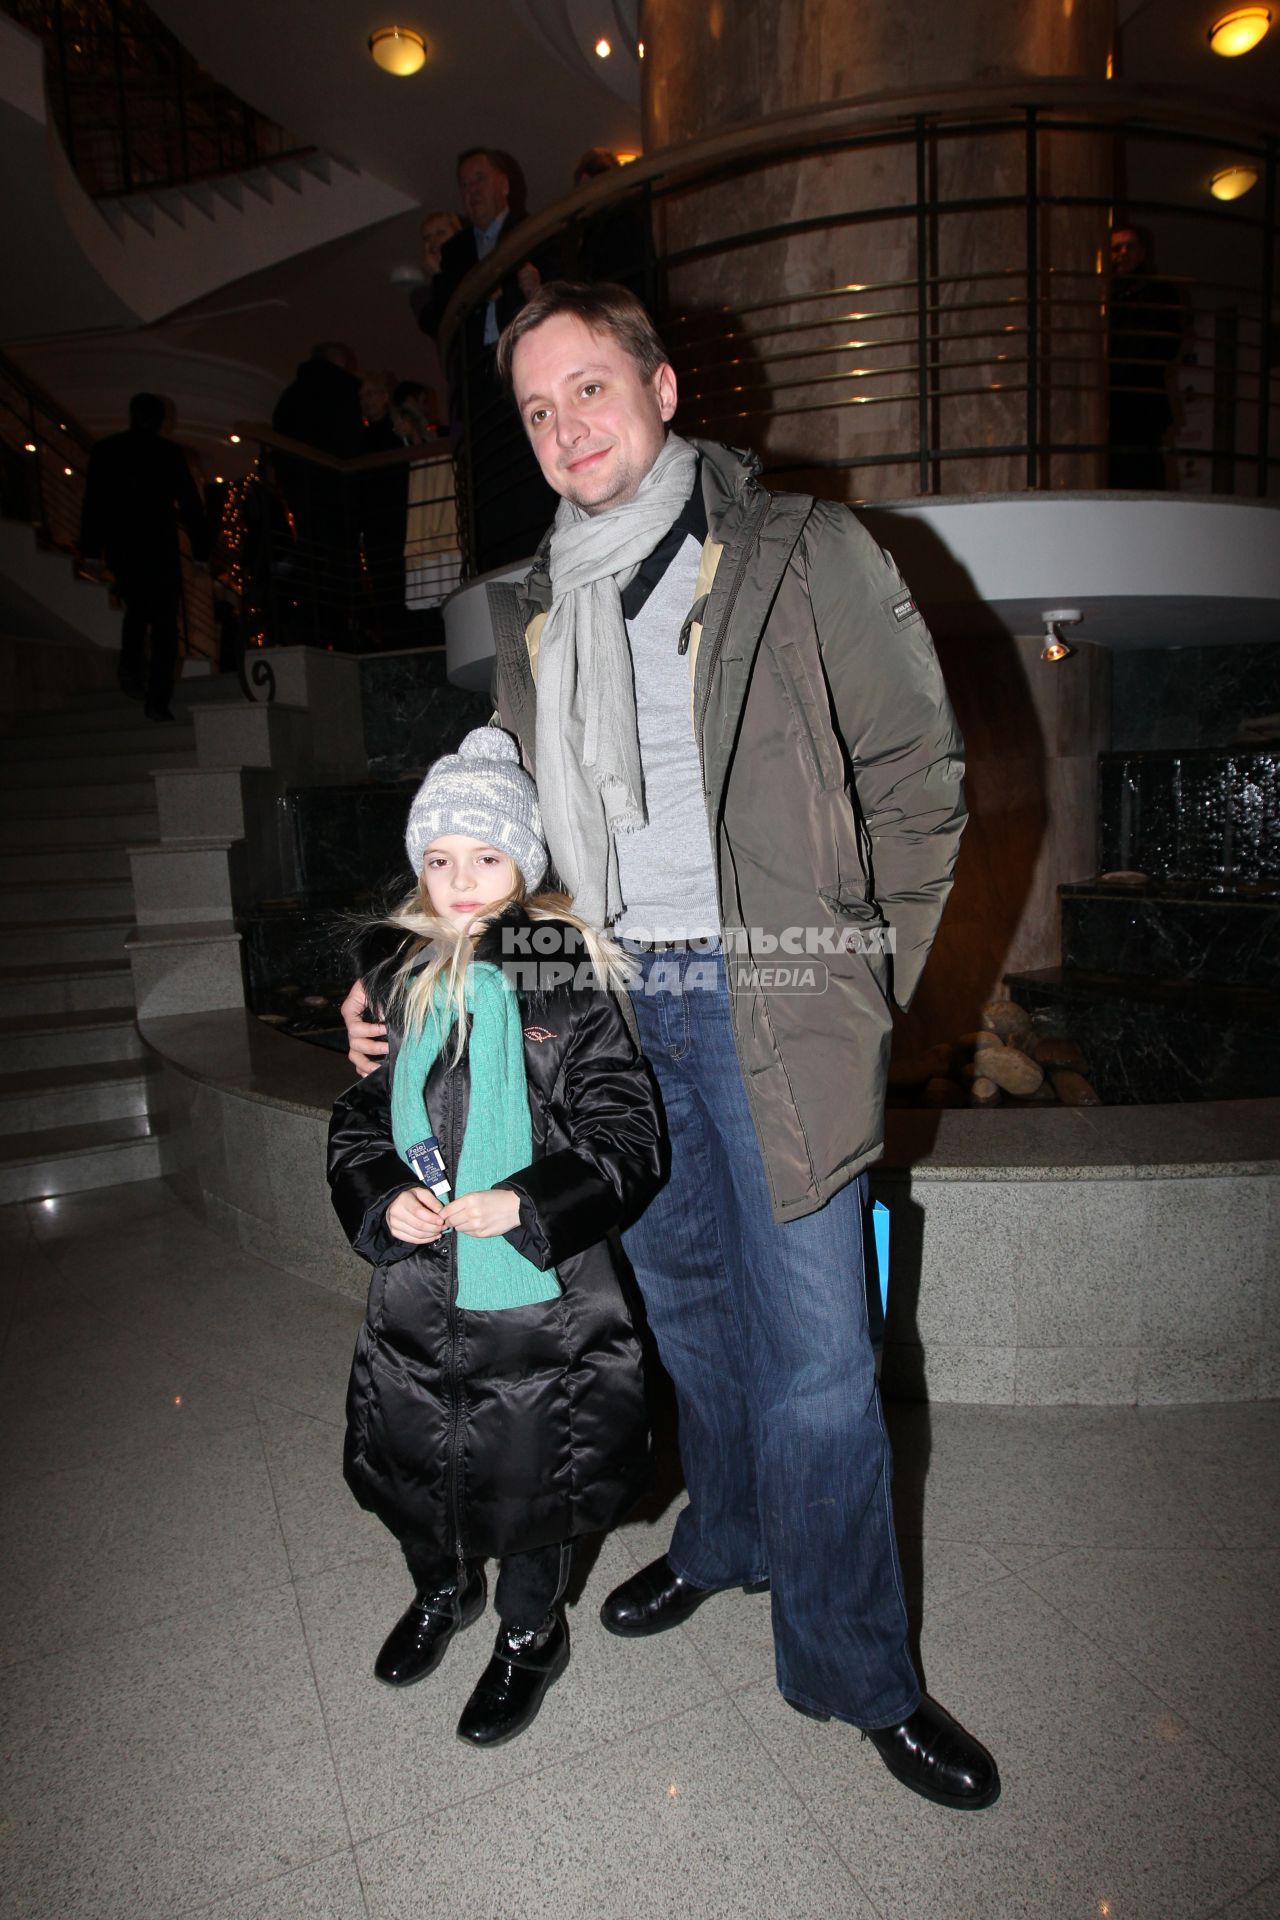 Премьера фильма `Щелкунчик и крысиный король 3D` в театре `Новая опера`. На снимке: актер Артем Михалков с дочерью Натальей.